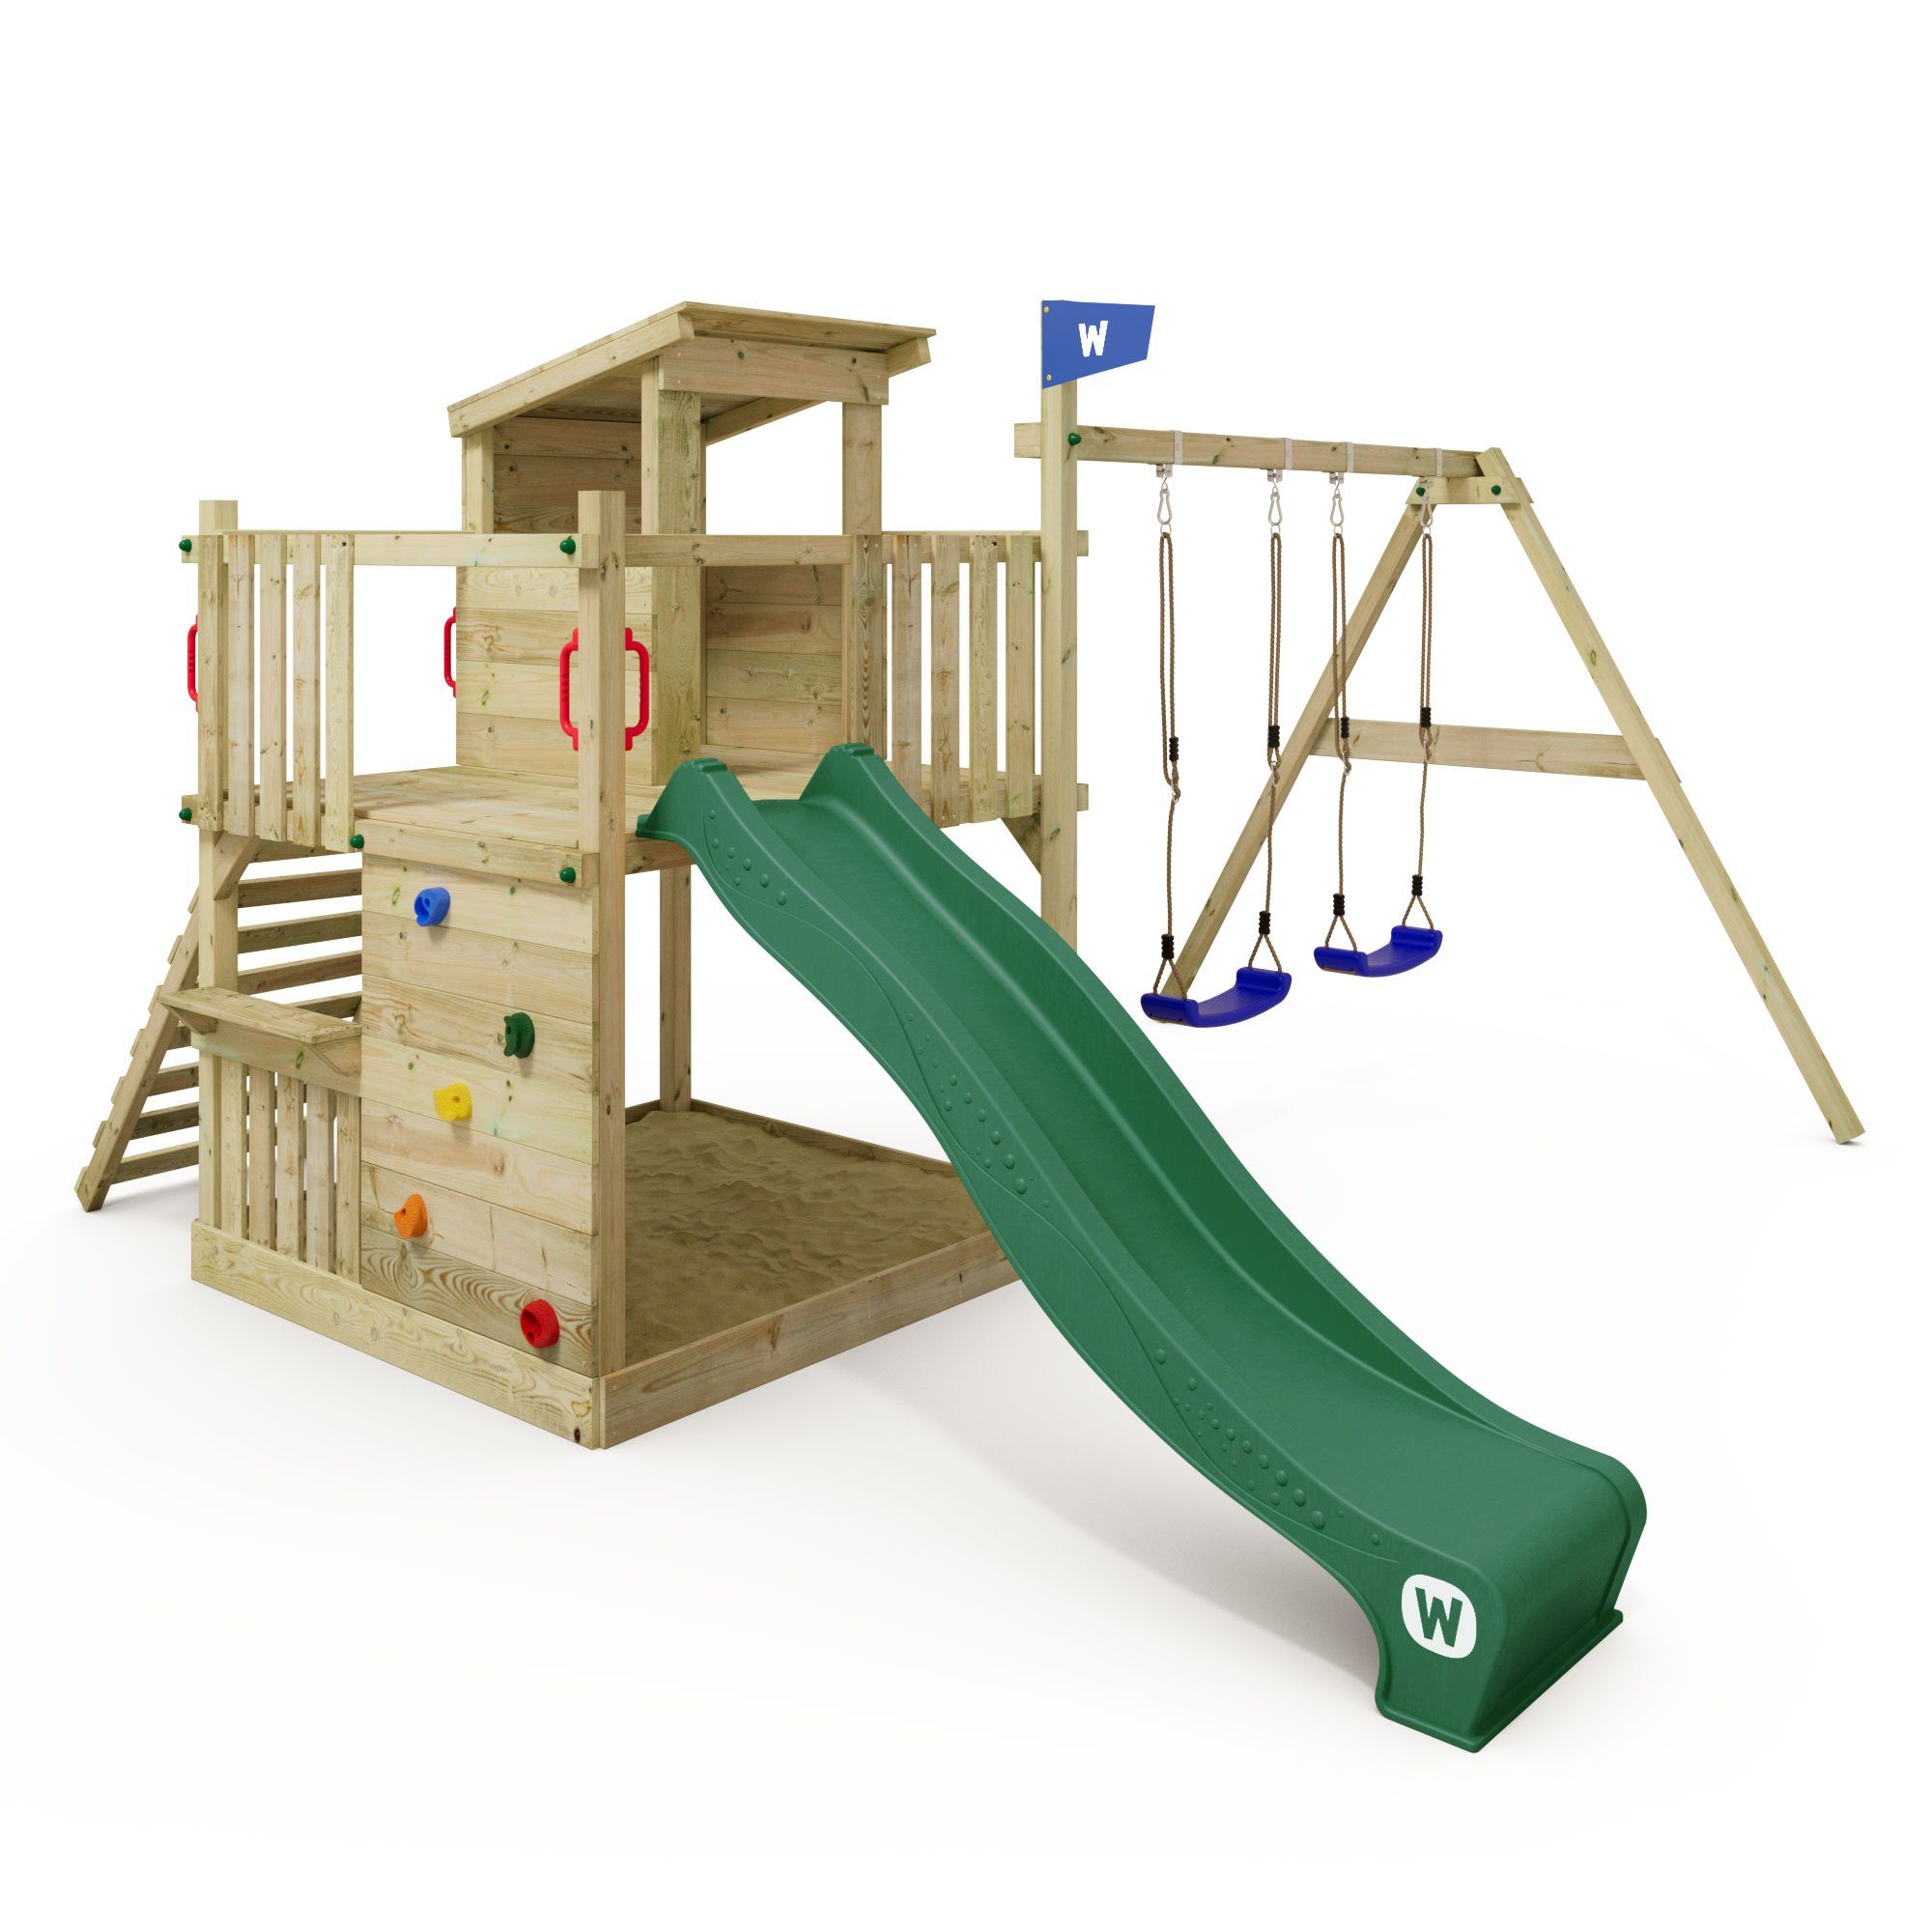 Wickey Klettergerüst Spielturm Smart Cabin mit Rutsche und großem Sandkasten, 10-jahre Garantie*, Spielhaus mit flachem Holzdach und Sitzbank grün